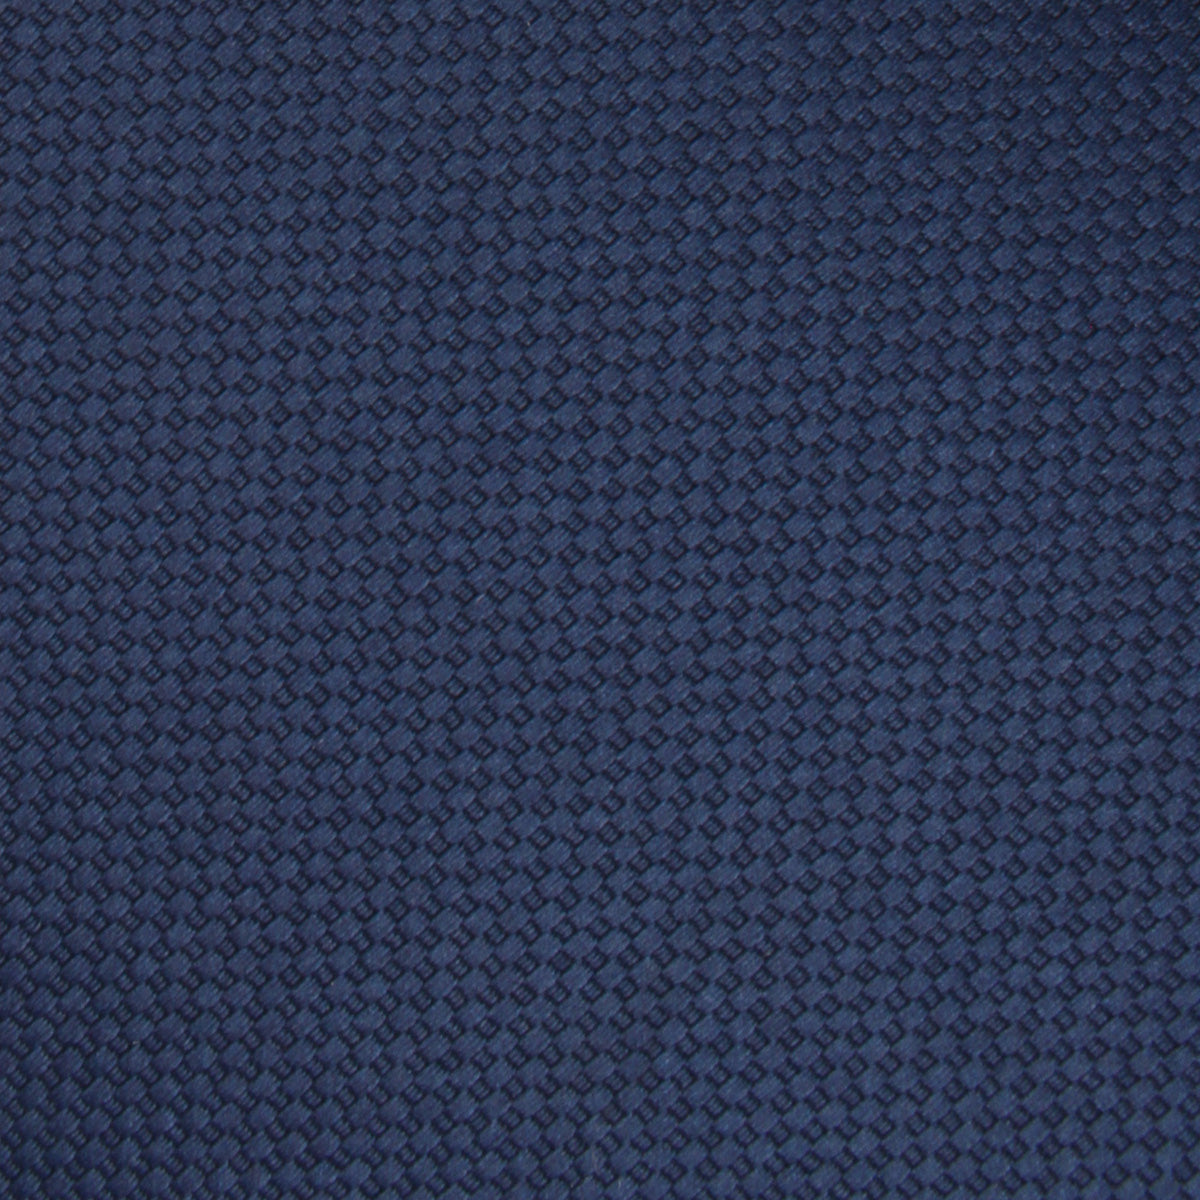 Navy Blue Basket Weave Necktie Fabric